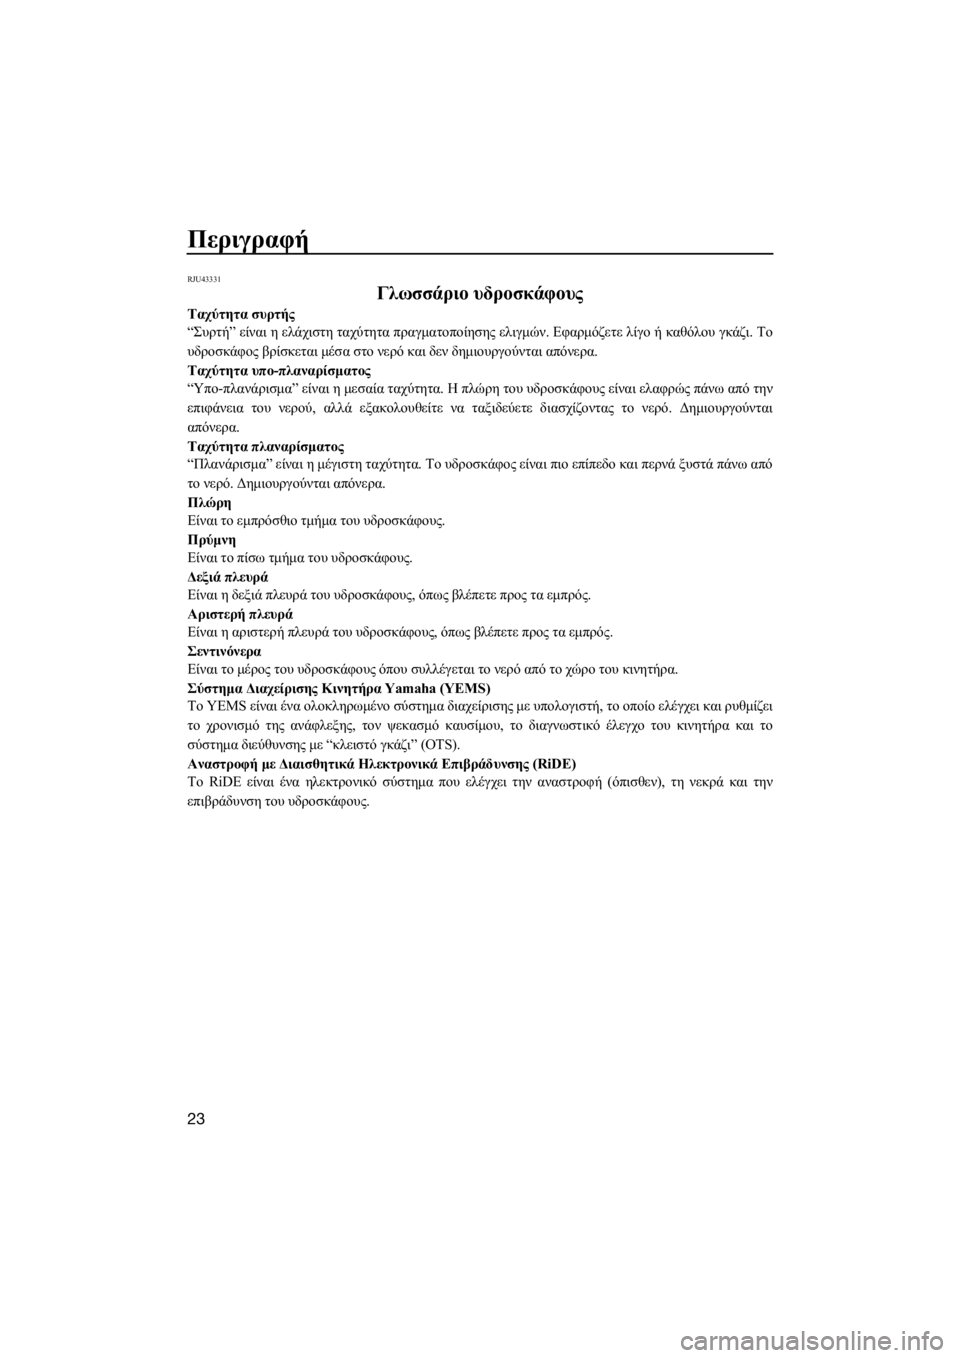 YAMAHA FX HO CRUISER 2015  ΟΔΗΓΌΣ ΧΡΉΣΗΣ (in Greek) Περιγραφή
23
RJU43331
Γλωσσάριο υδροσκάφους
Ταχύτητα συρτής
“Συρτή” είναι η ελάχιστη ταχύτητα πραγματοποίησης �